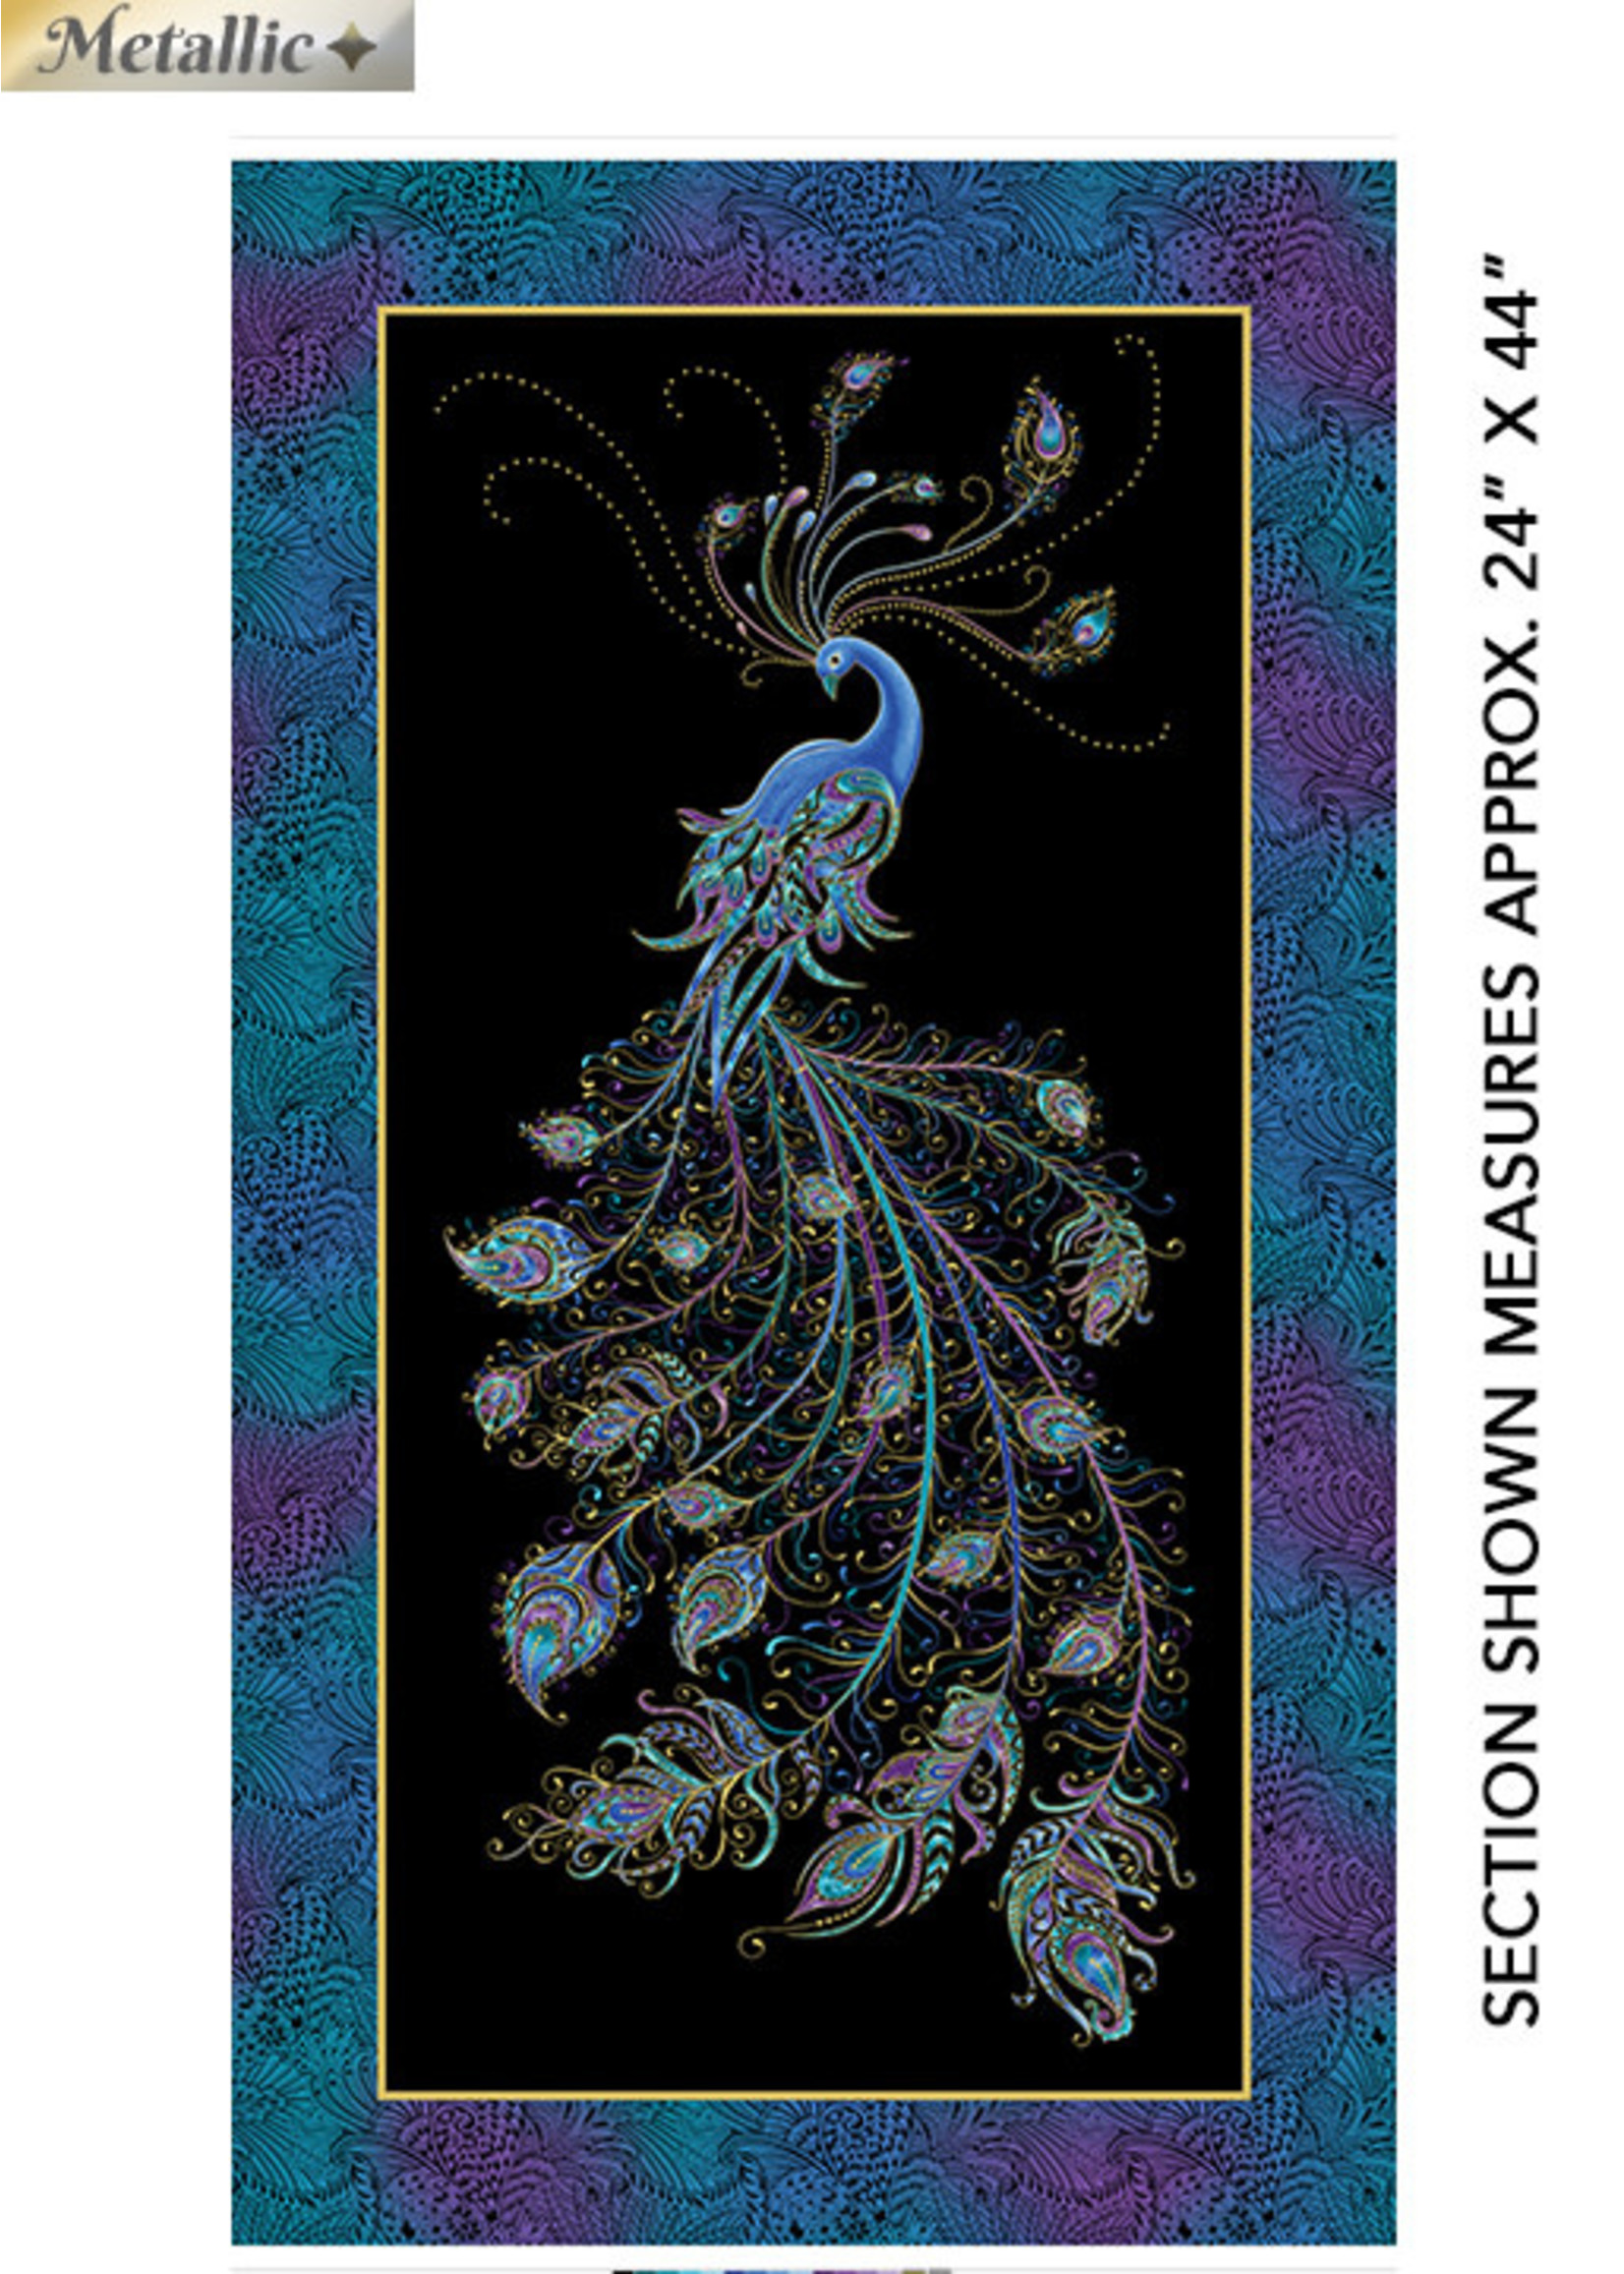 Benartex Studio Panel 02 - Peacock Flourish - Black